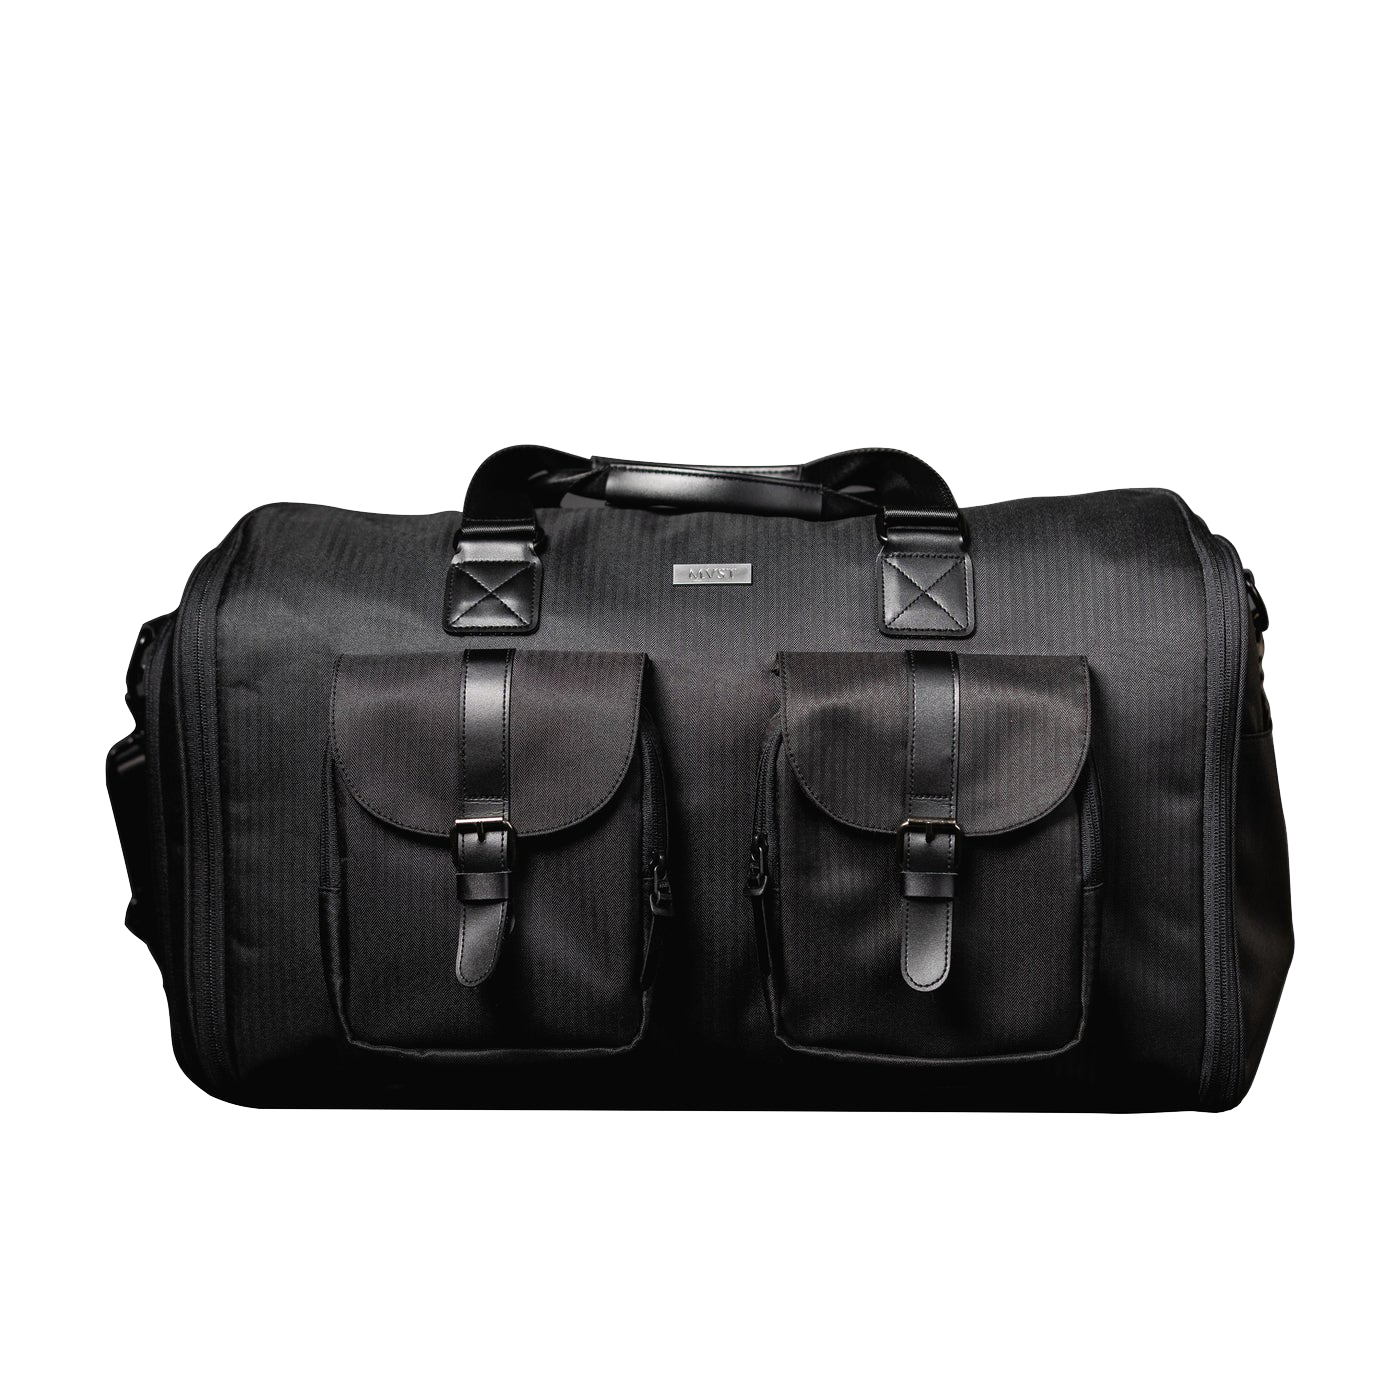 MVST Duffle Bag Garment Bag 2 in 1